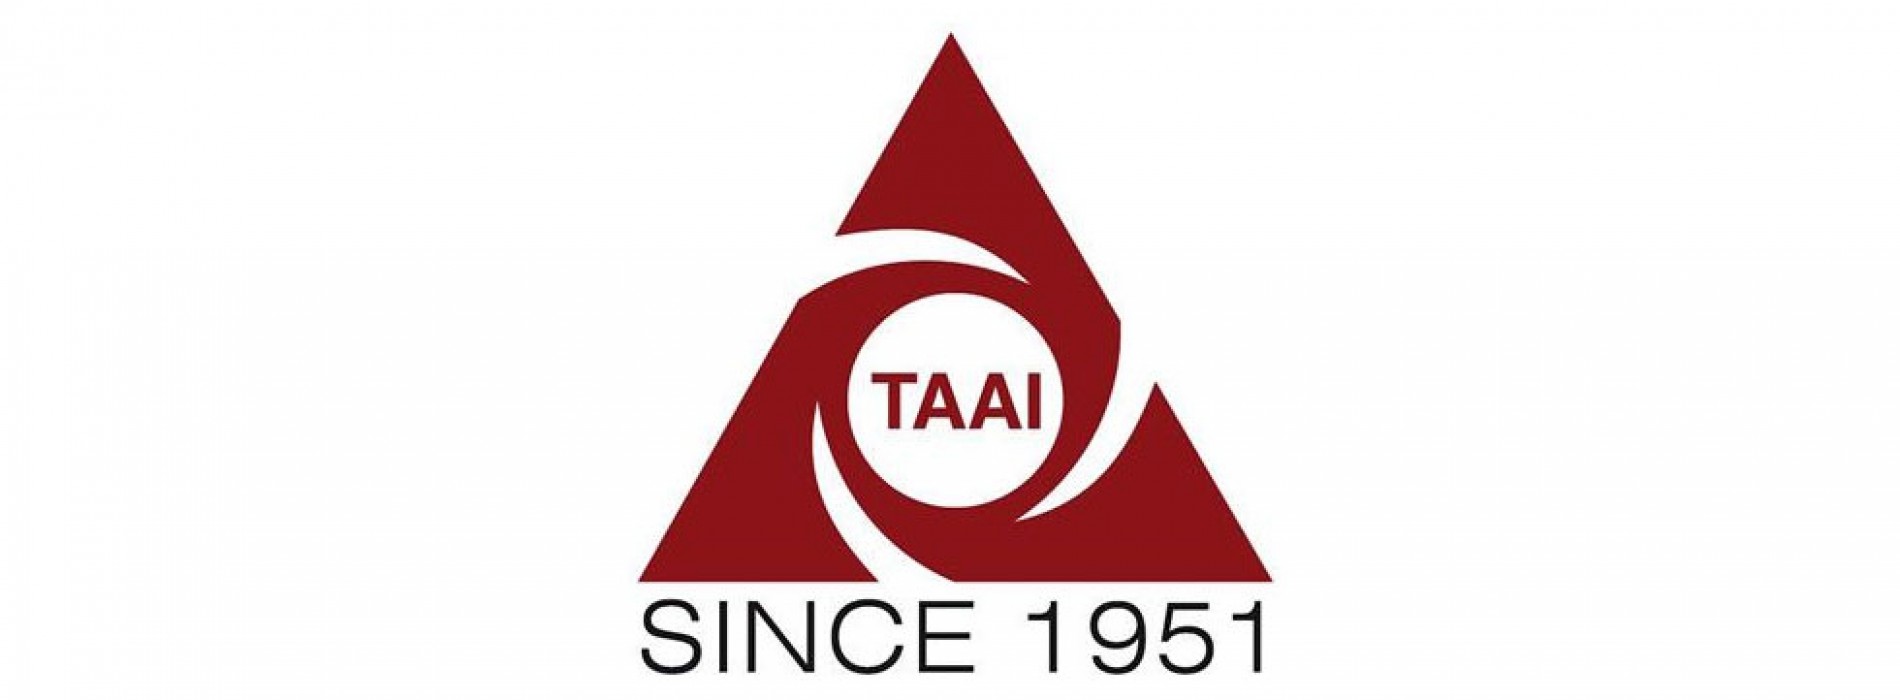 TAAI-NR undertakes series of member-friendly initiatives